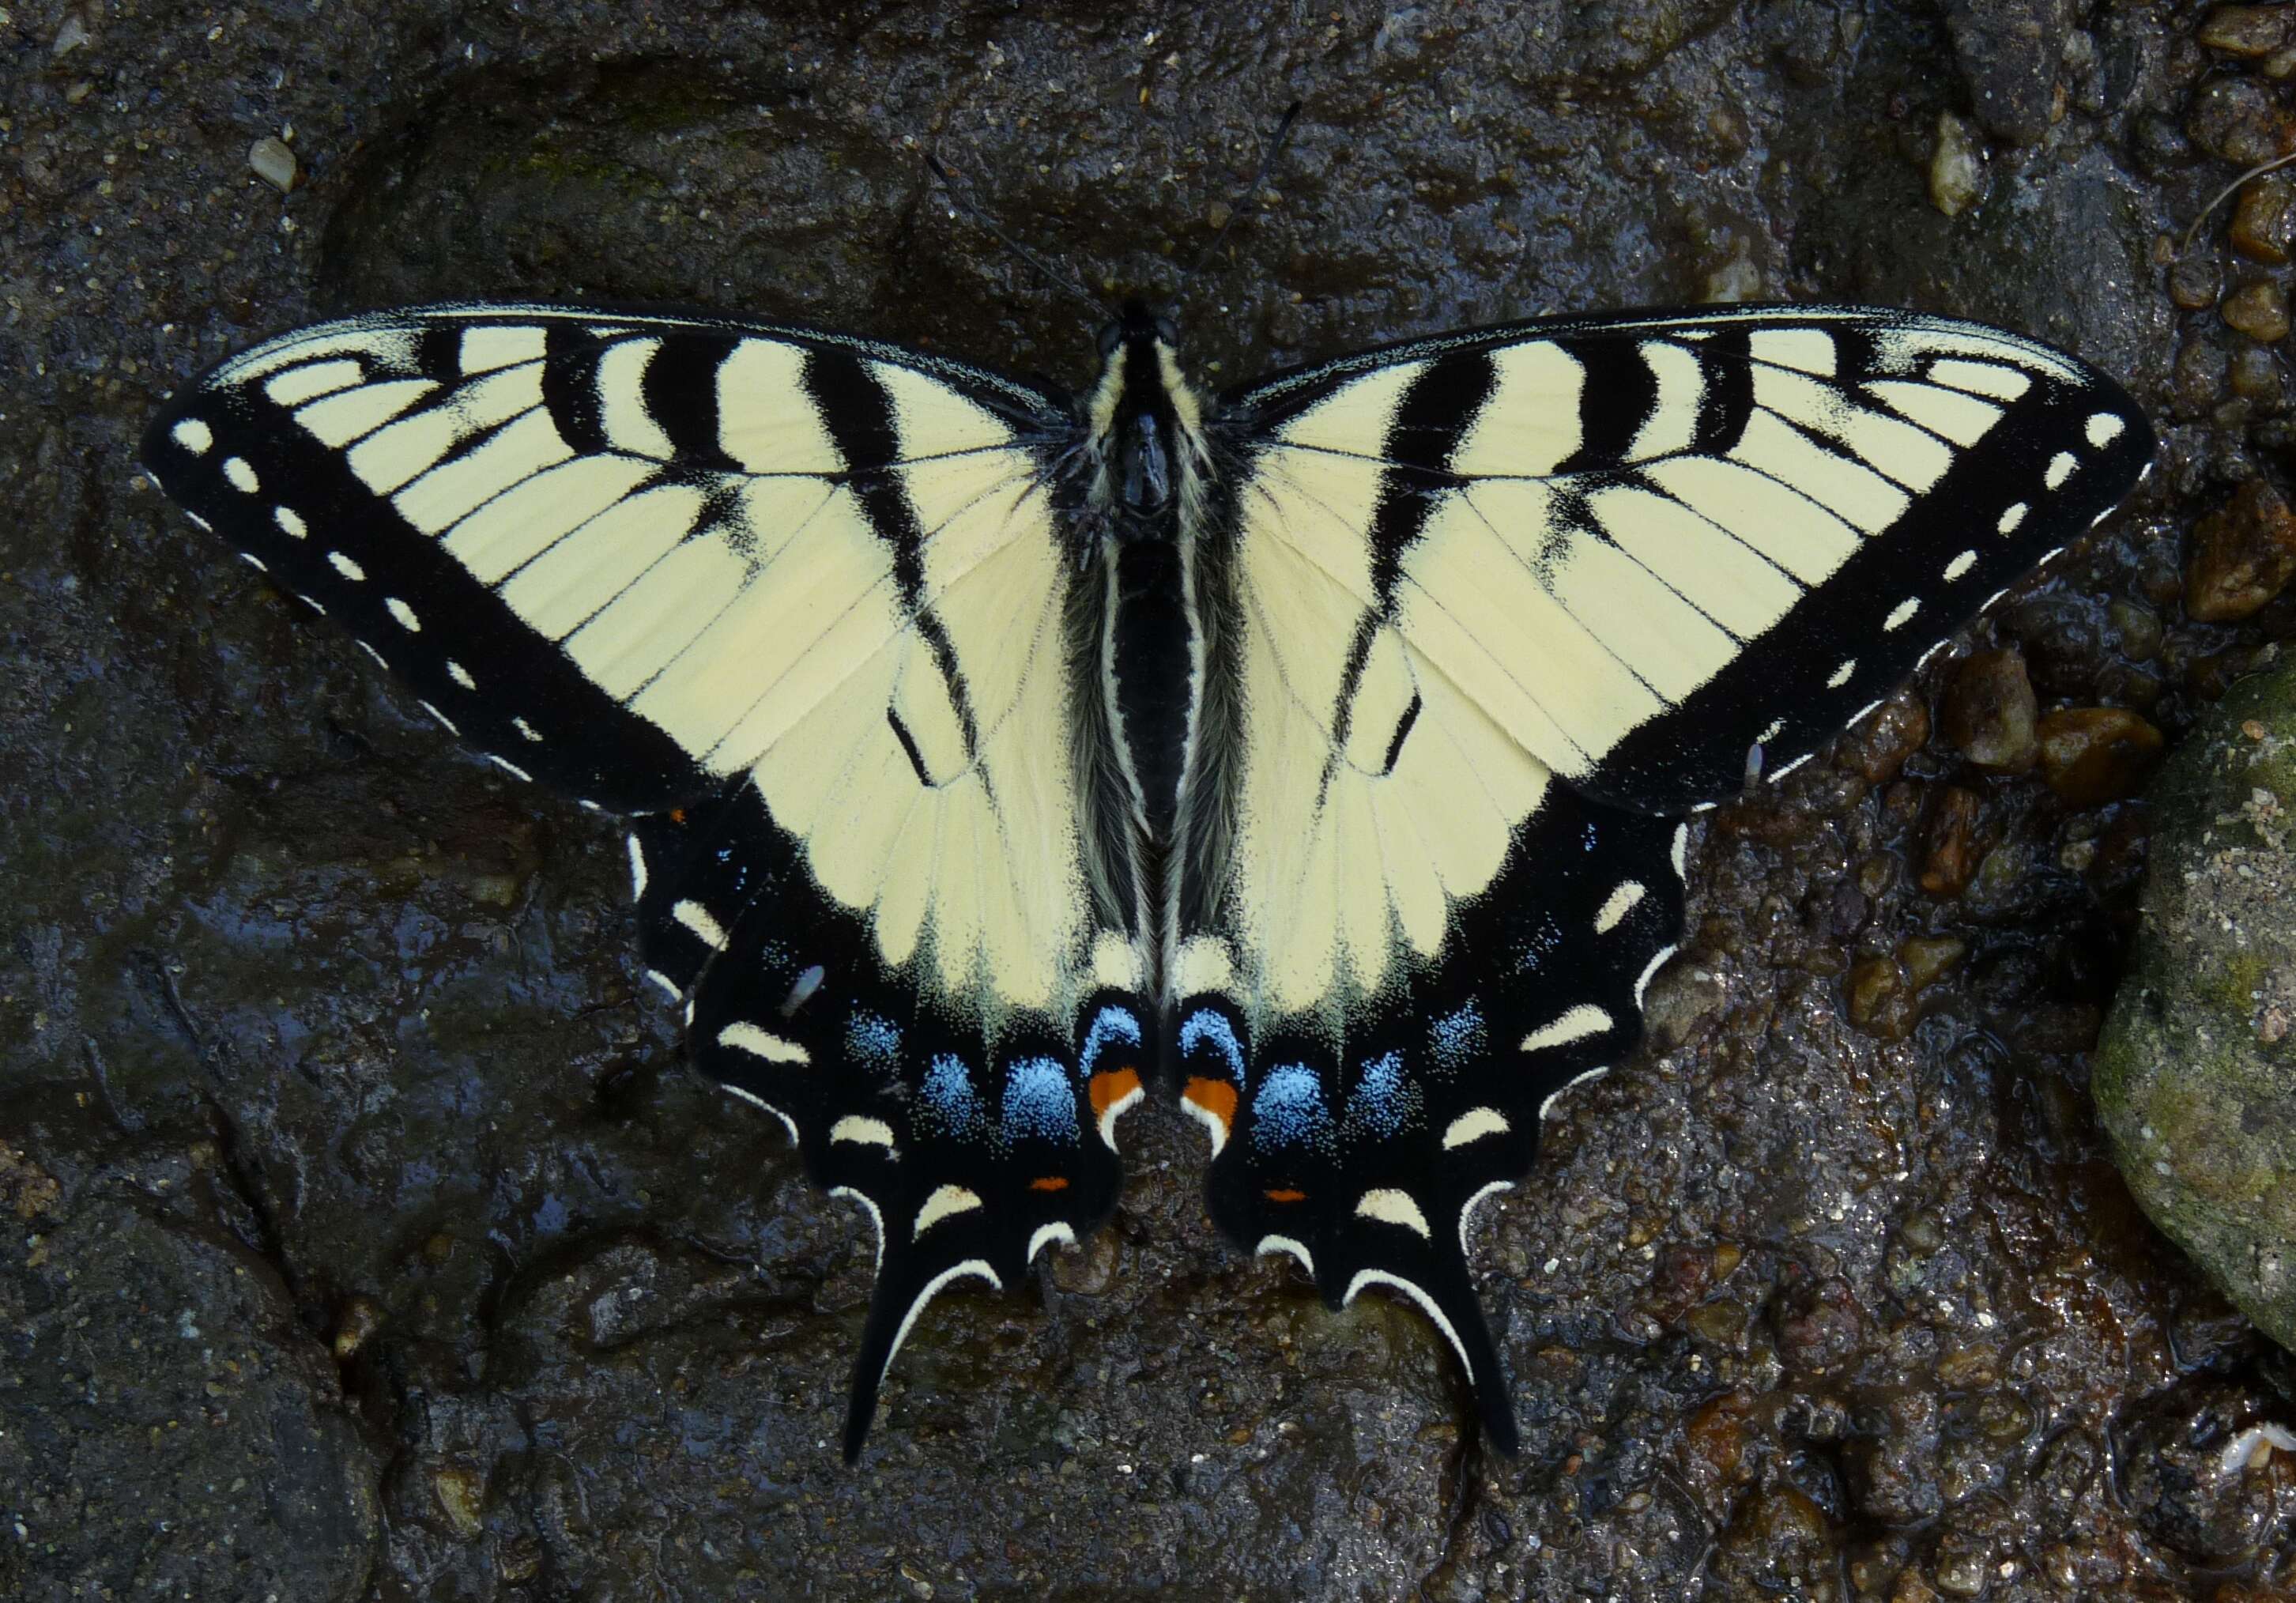 Image of Papilio appalachiensis